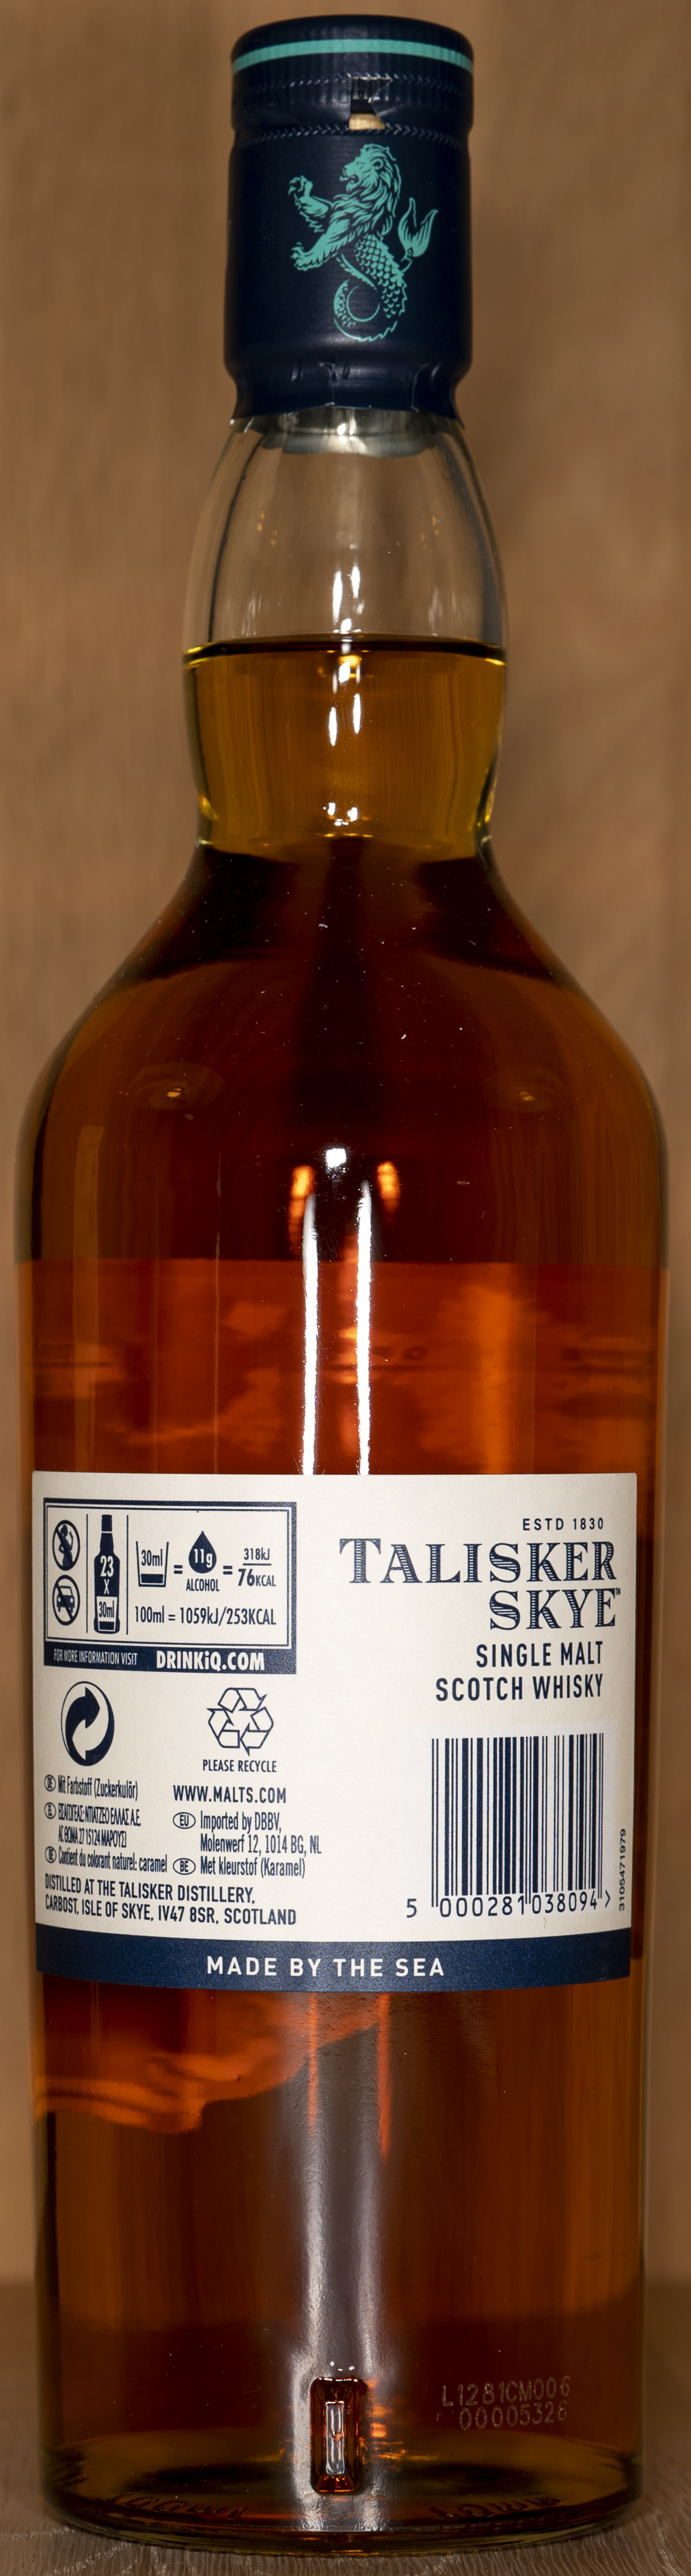 Billede: DSC_5011 - Talisker Skye - bottle back.jpg